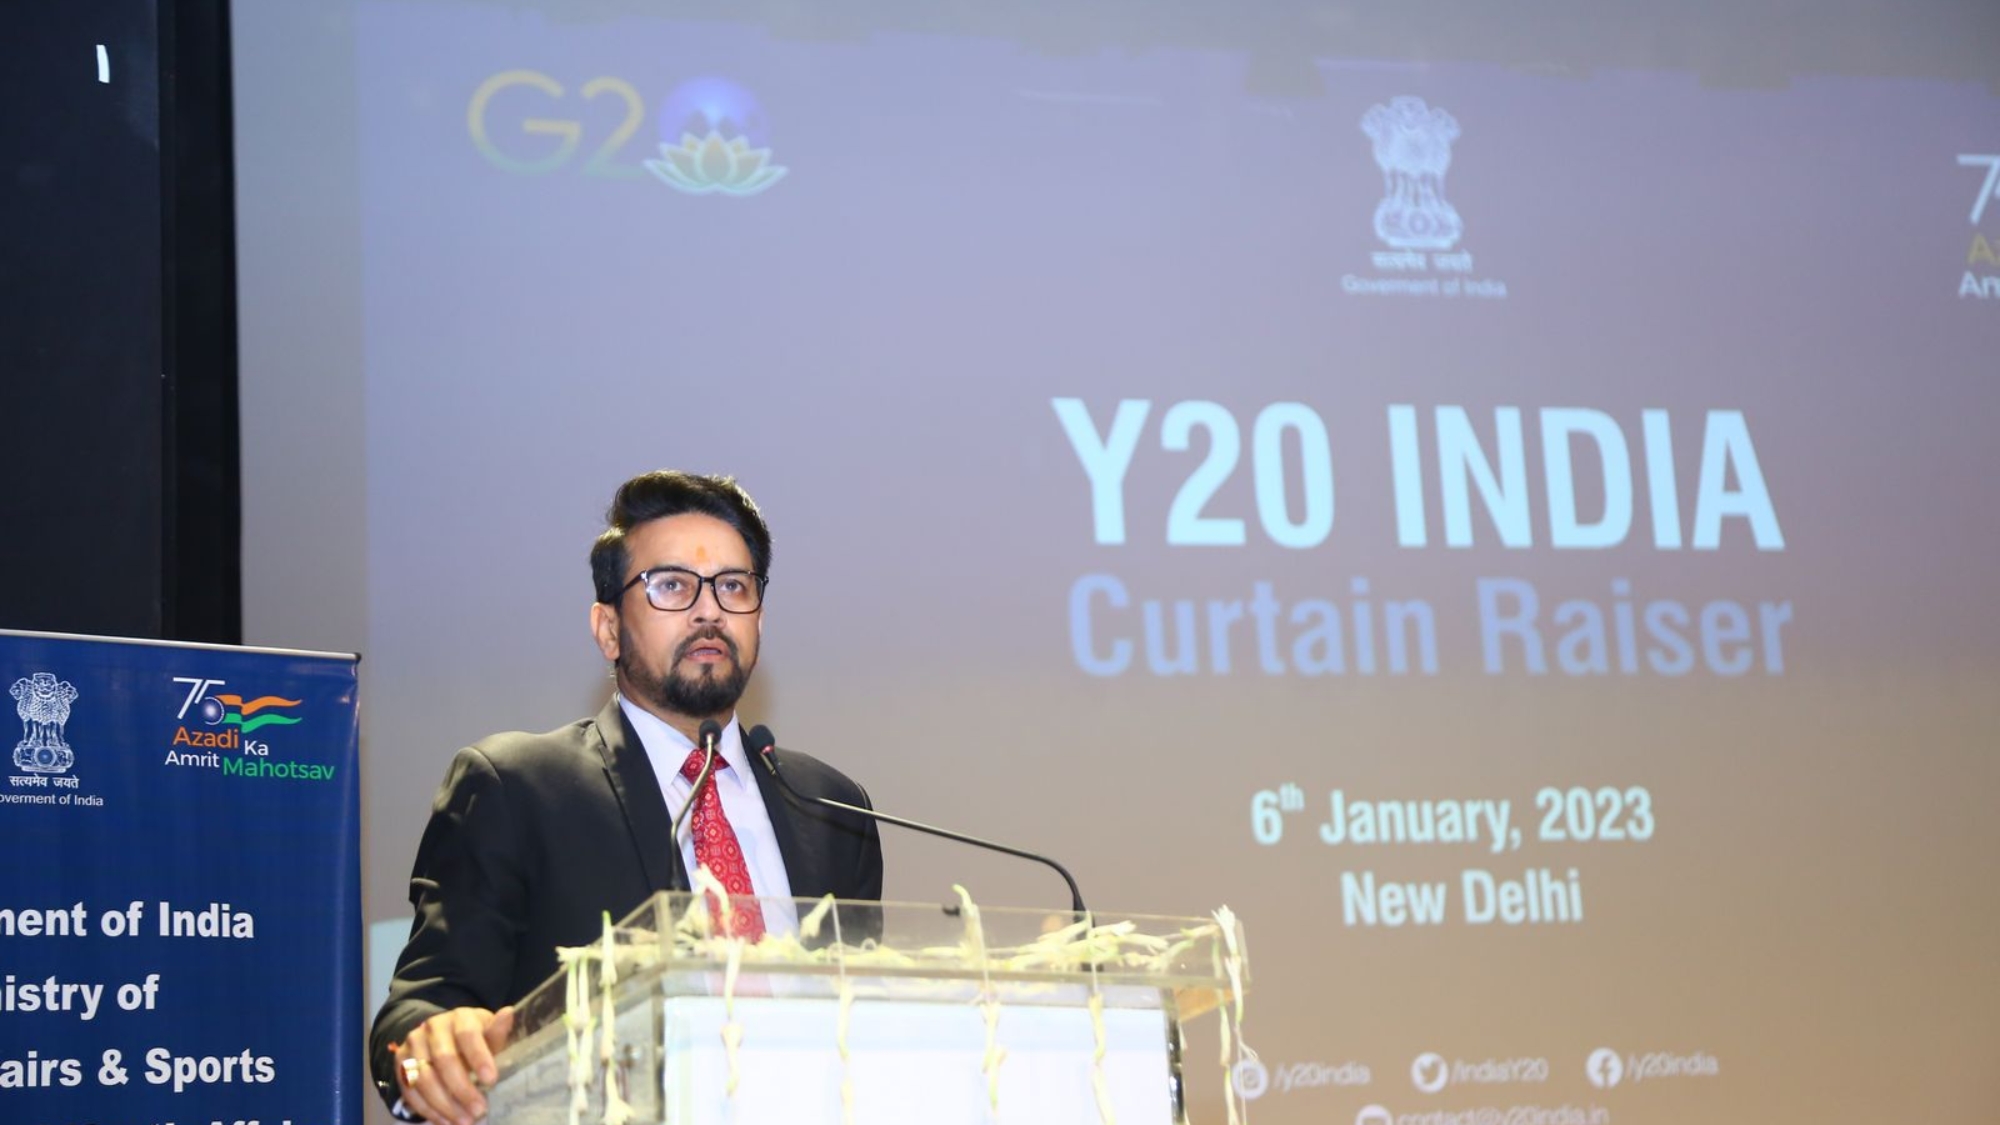 Y20 India curtain raiser (6)